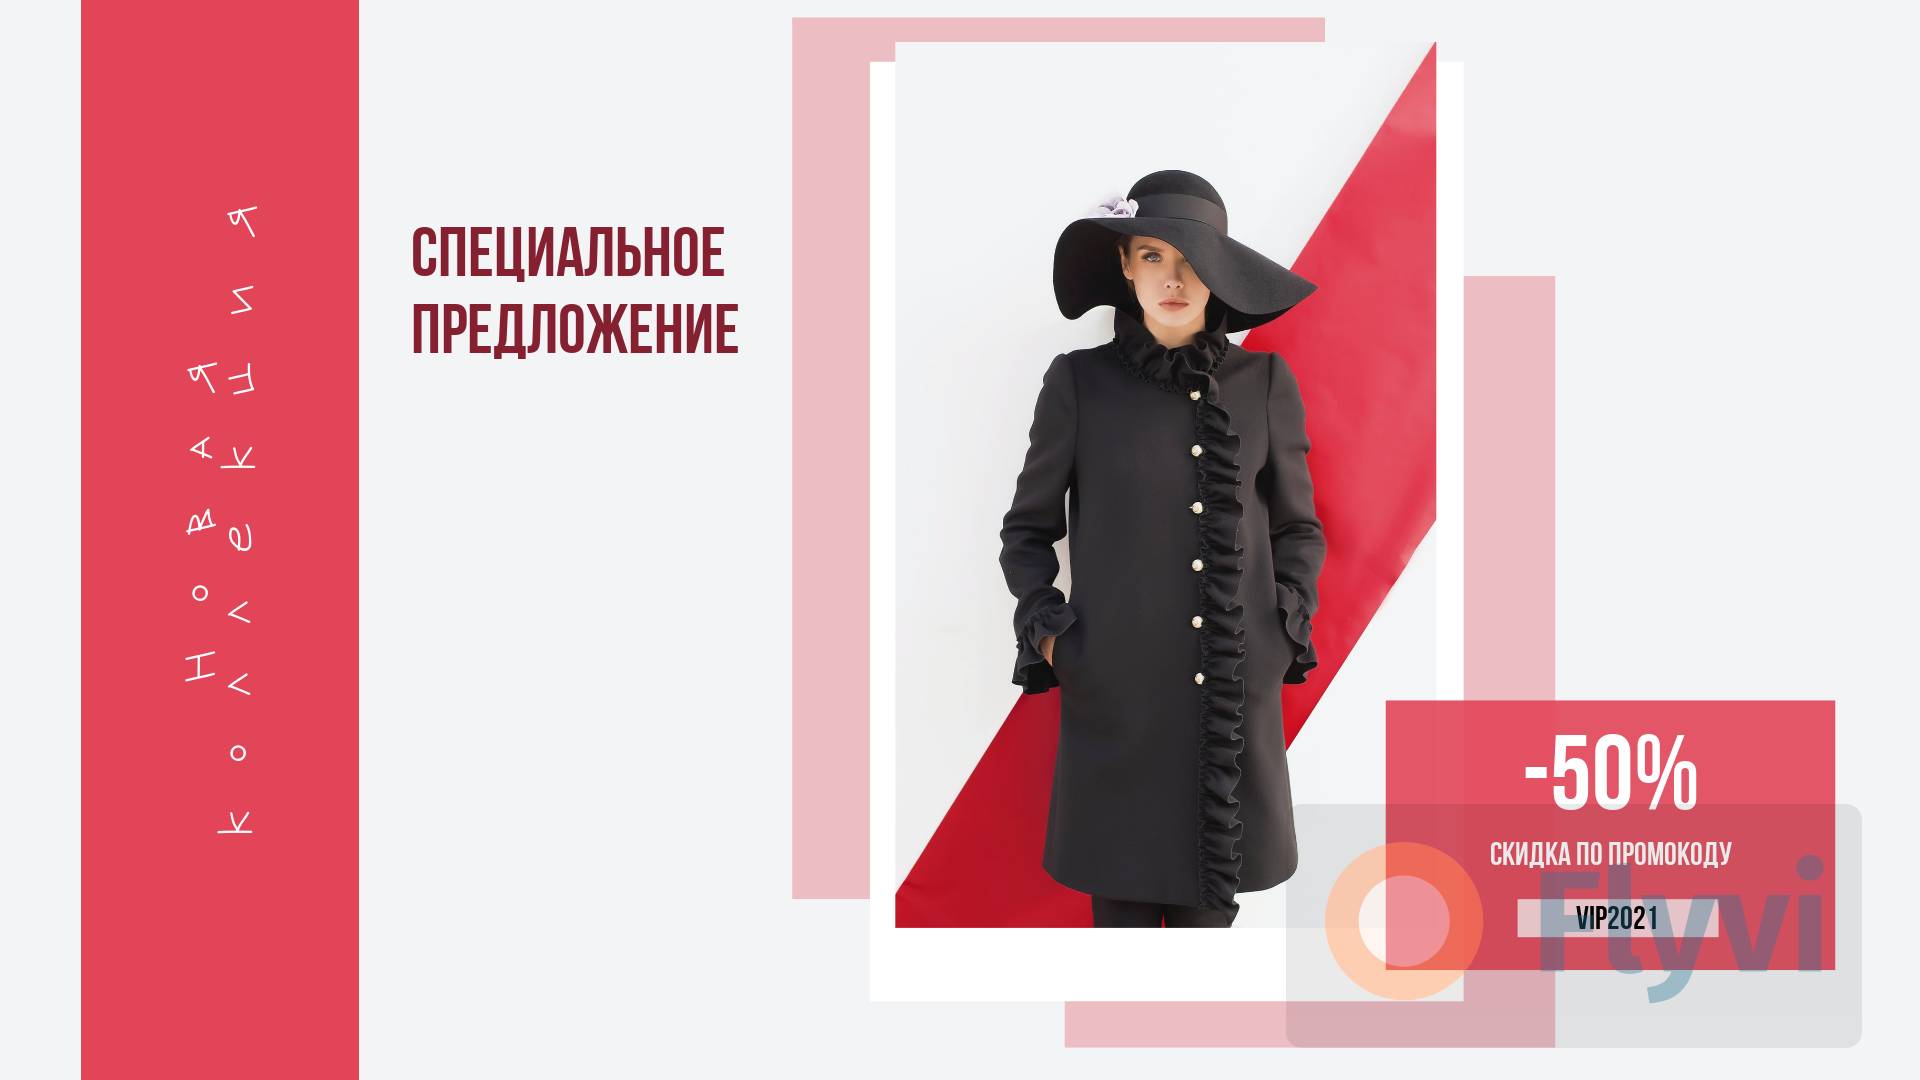 Экстравагантная публикация с девушкой в широкополой фетровой шляпе флоппи и черном пальто